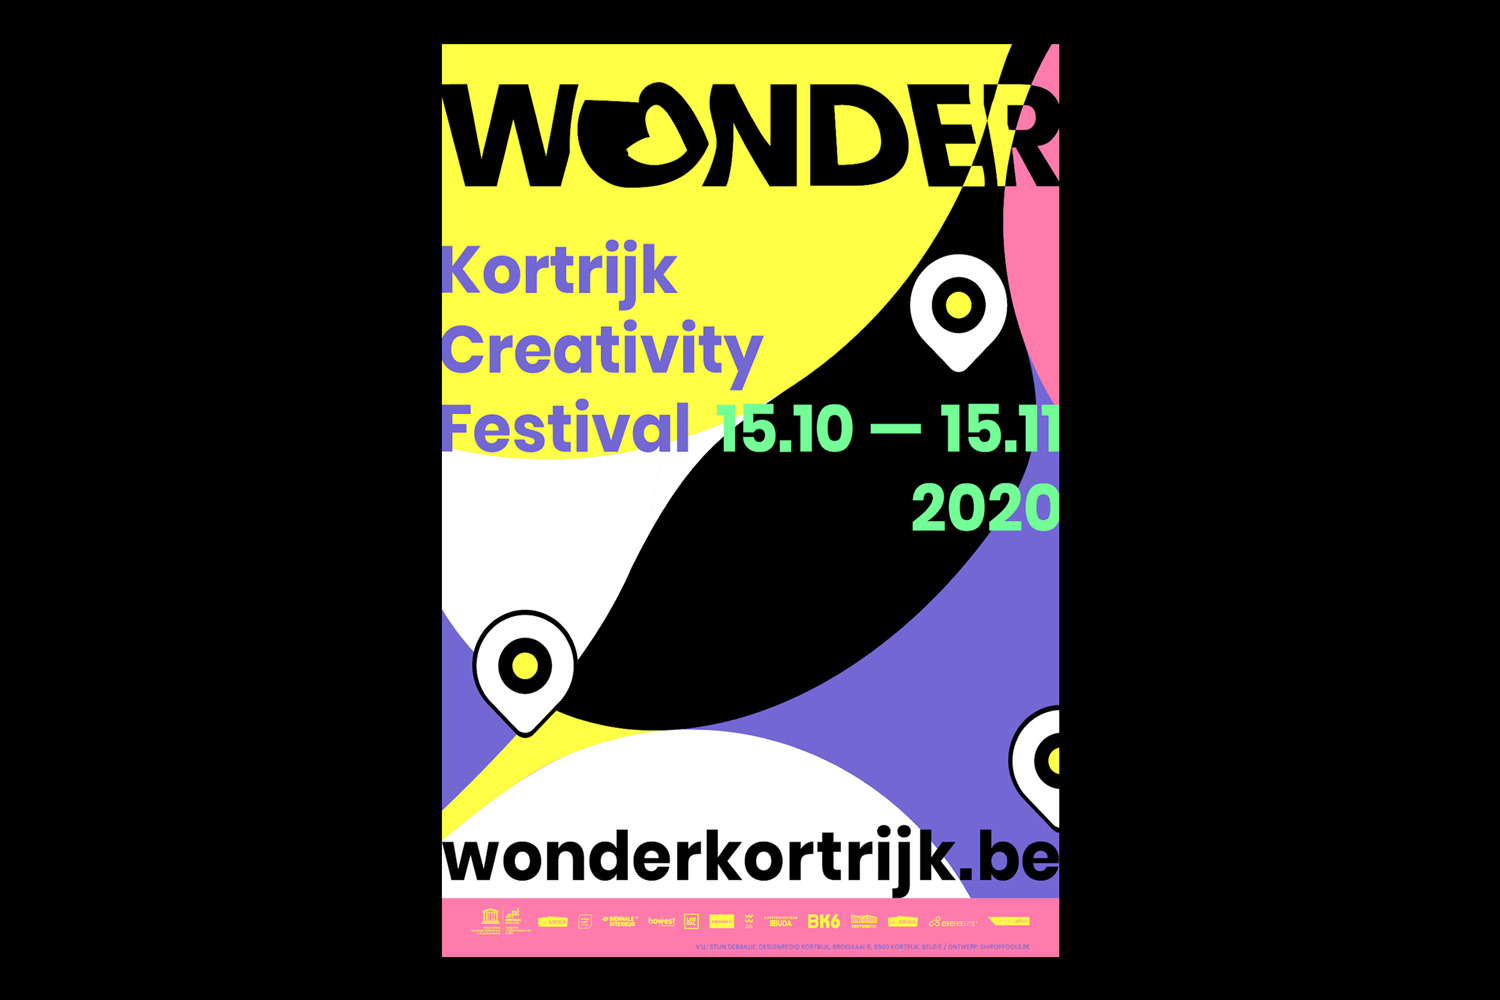 Wonder-Kortrijk-Creativity-Festival-identity-branding-Designregio-Kortrijk-Artist-Proof-Studio-Thomas-De-Ben-6.png